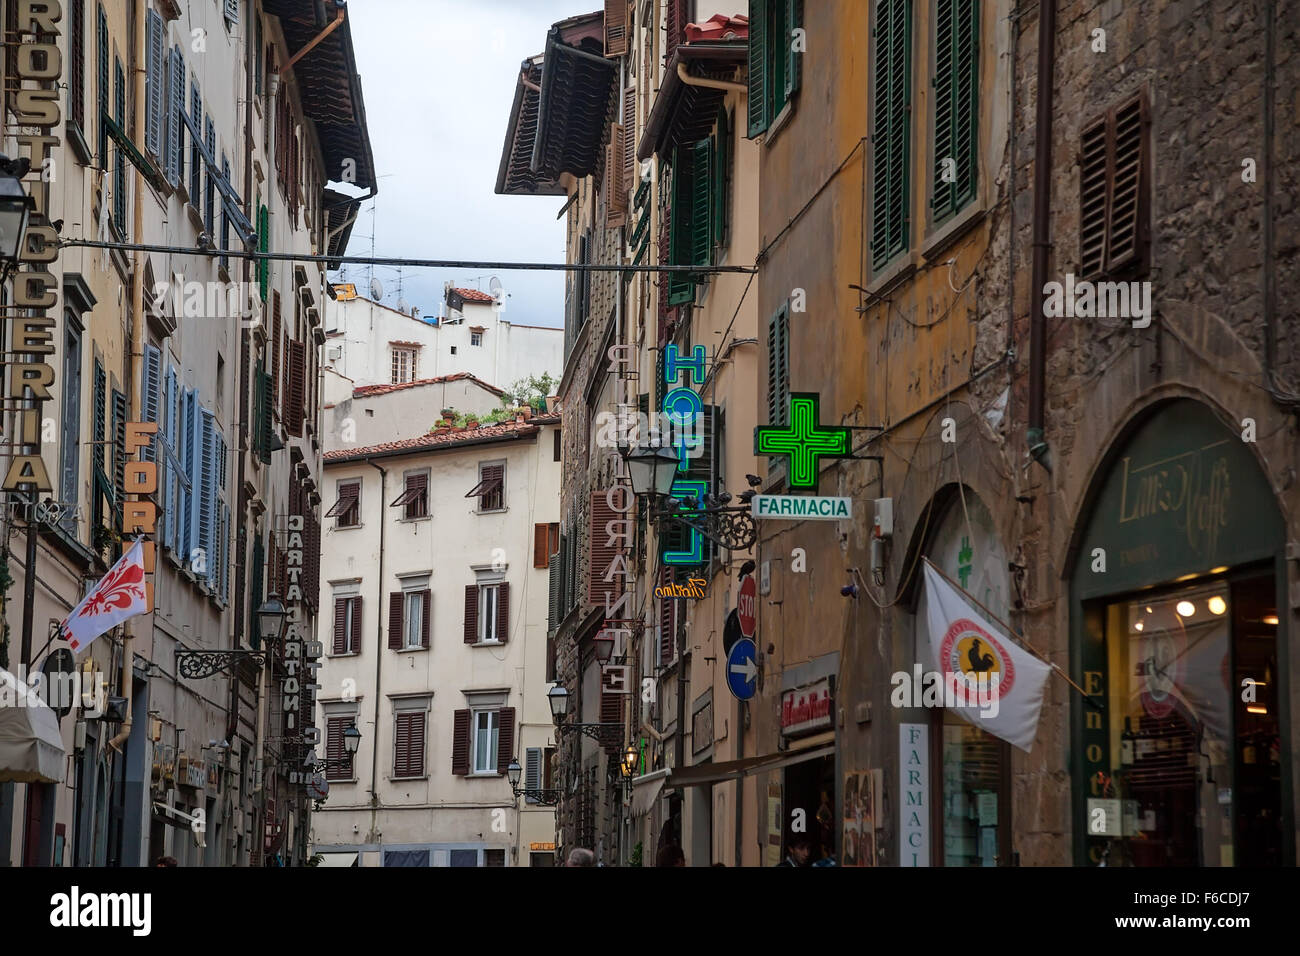 Florencia (Firenze), Italia - Octubre 09, 2012: la antigua calle angosta Foto de stock